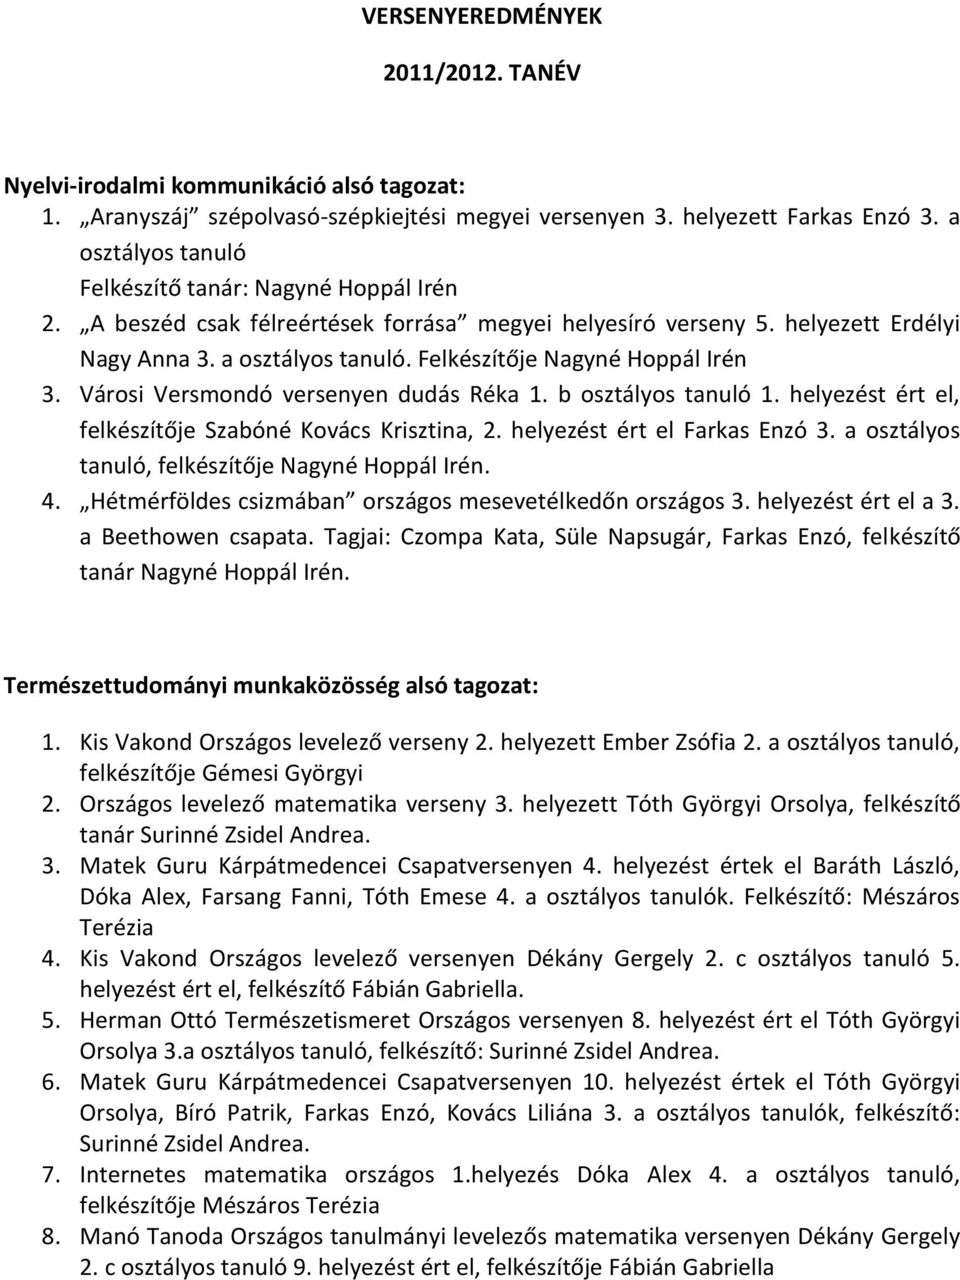 VERSENYEREDMÉNYEK 2011/2012. TANÉV - PDF Ingyenes letöltés